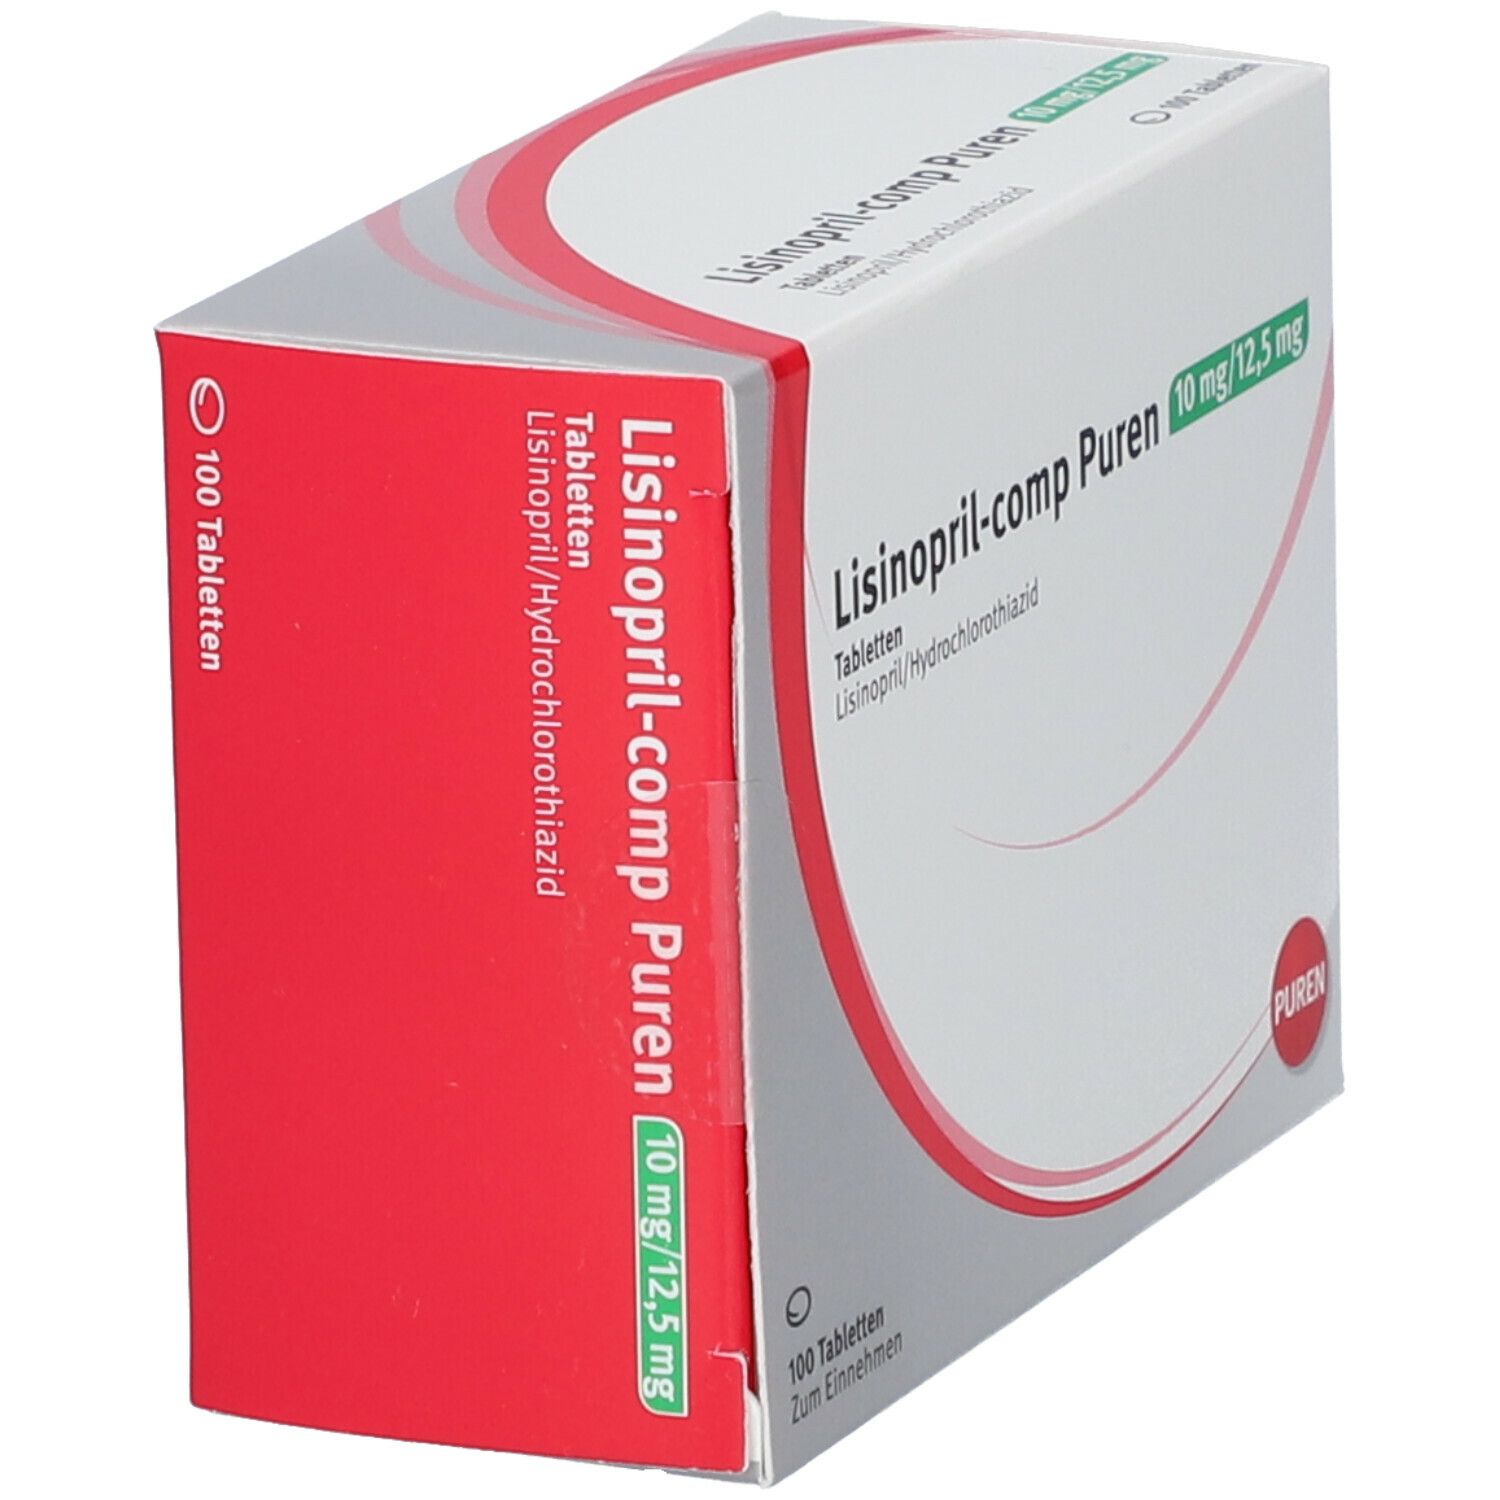 Lisinopril-comp PUREN 10 mg/12,5 mg